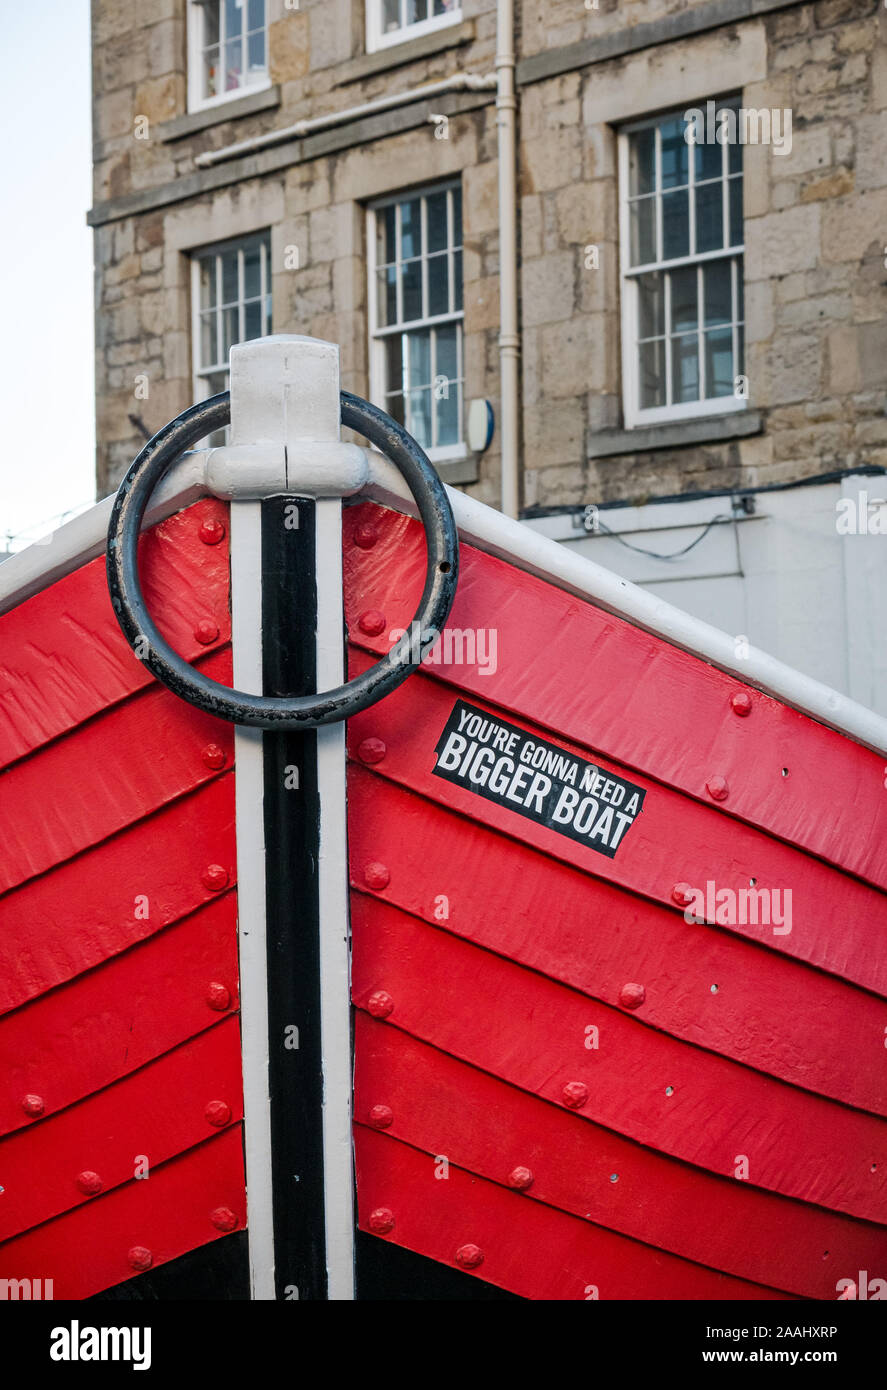 Autocollant humoristique sur bateau sculpture de Jois Hunter, Quai commercial, Leith, Edinburgh, Scotland, UK, en disant "Vous allez Besoin d'un plus gros bateau" Banque D'Images